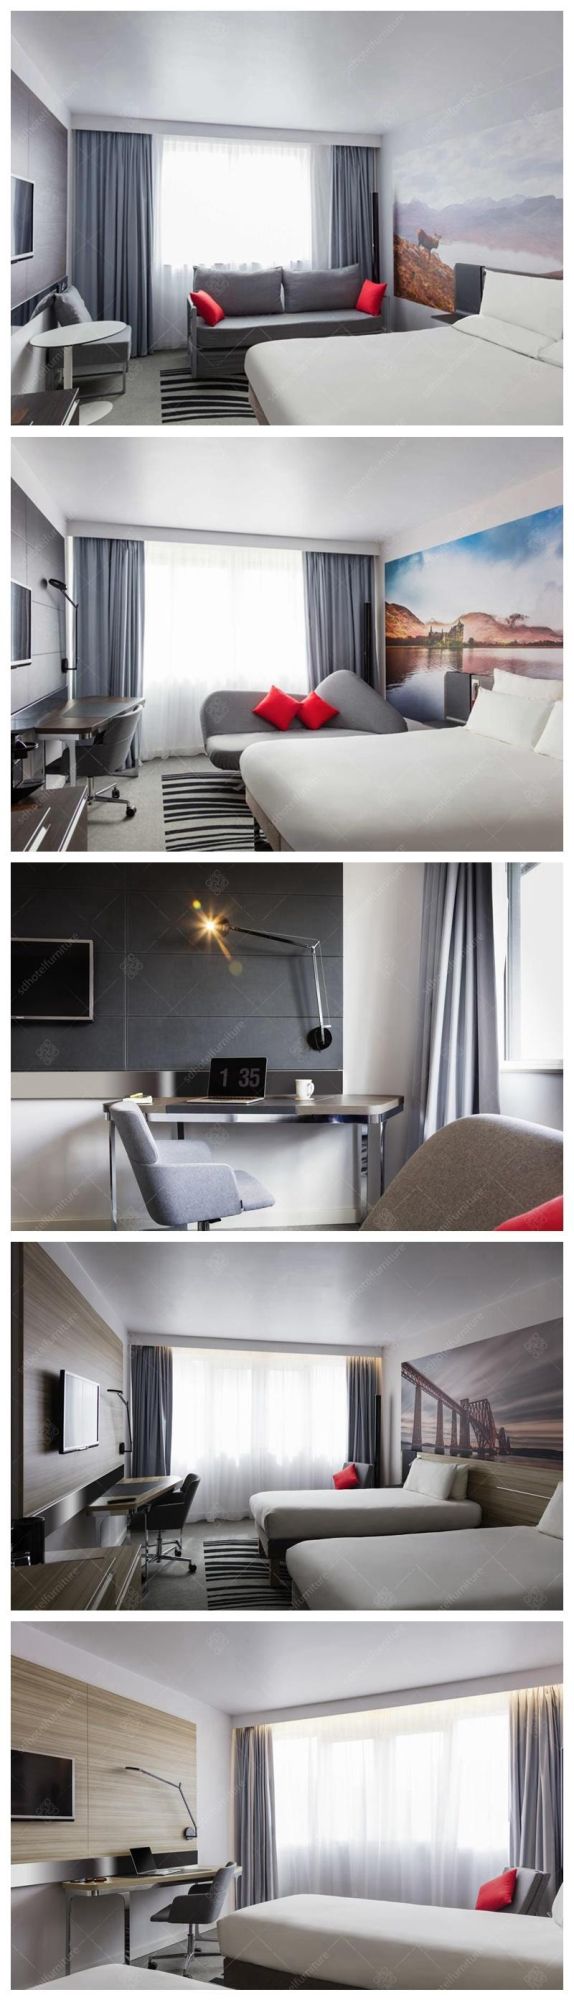 Modern Fashion Commercial Hotel Bedroom Furniture Sets for Sale